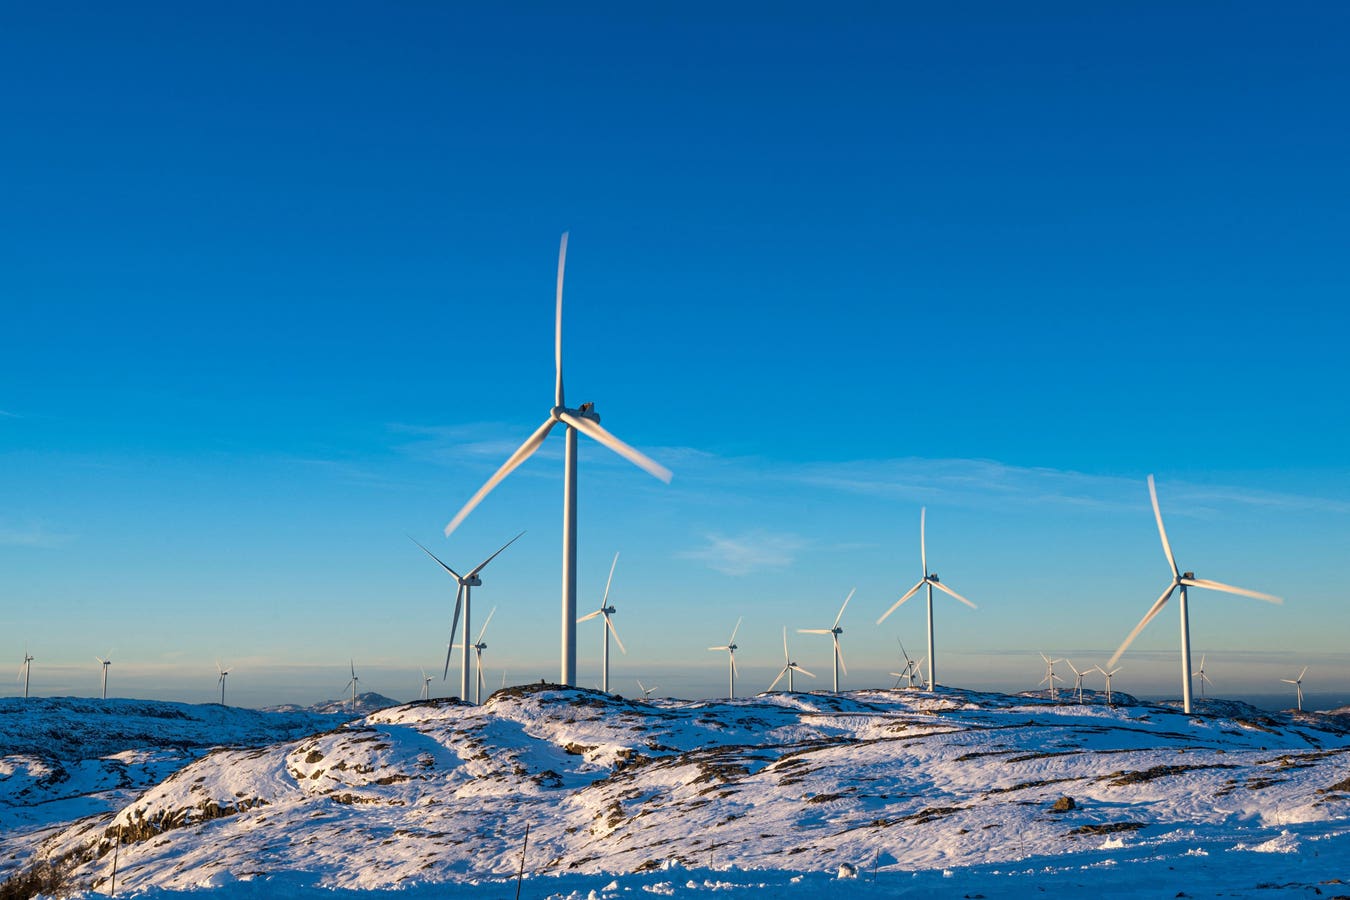 Les ambitions de la Norvège en matière d'énergie propre fondées sur la numérisation ne sont pas suffisantes - 67